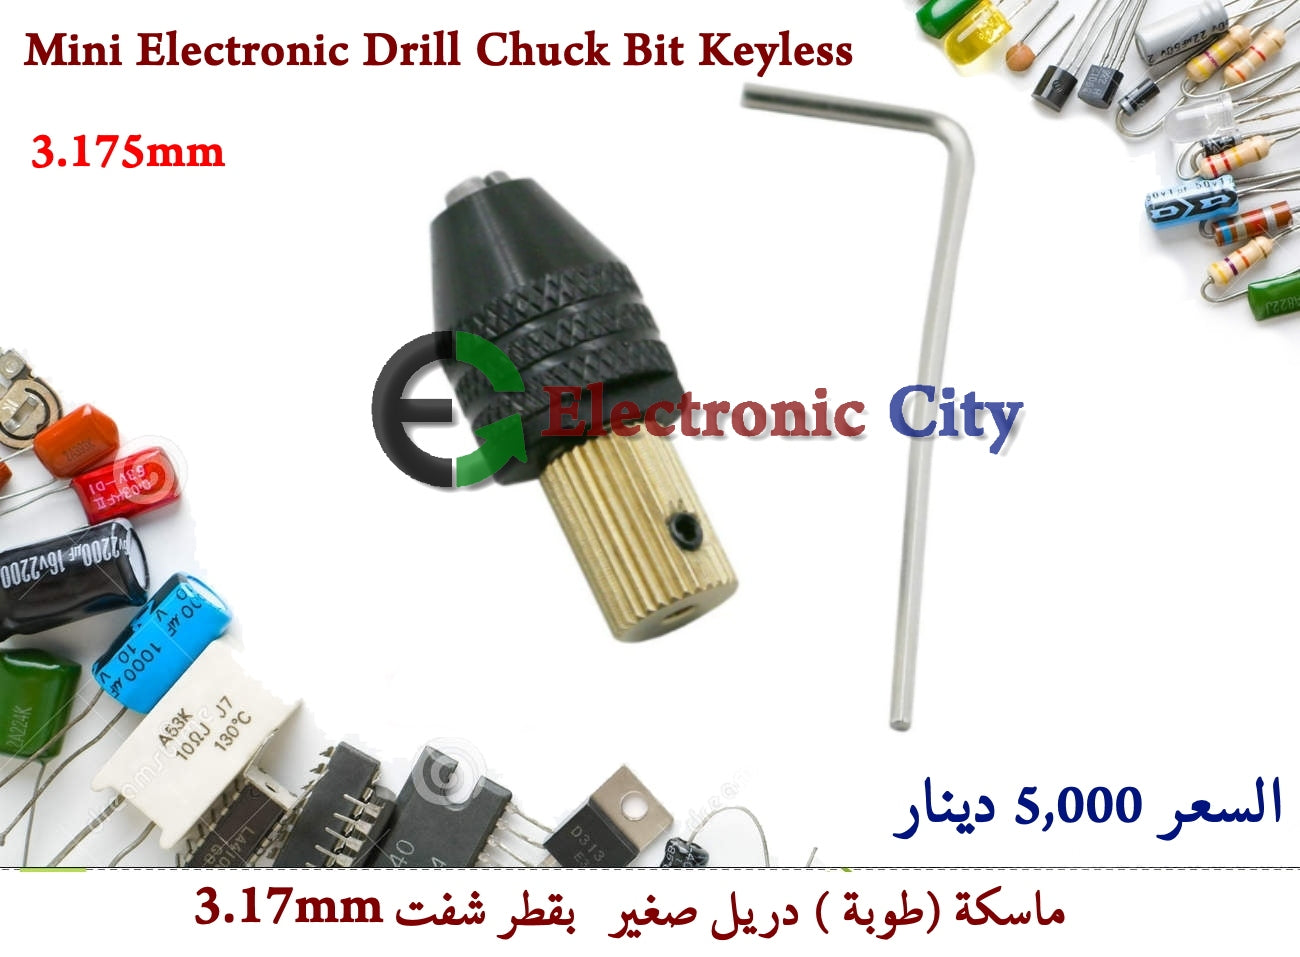 Mini Electronic Drill Chuck Bit Keyless 3.17mm #B5 011216